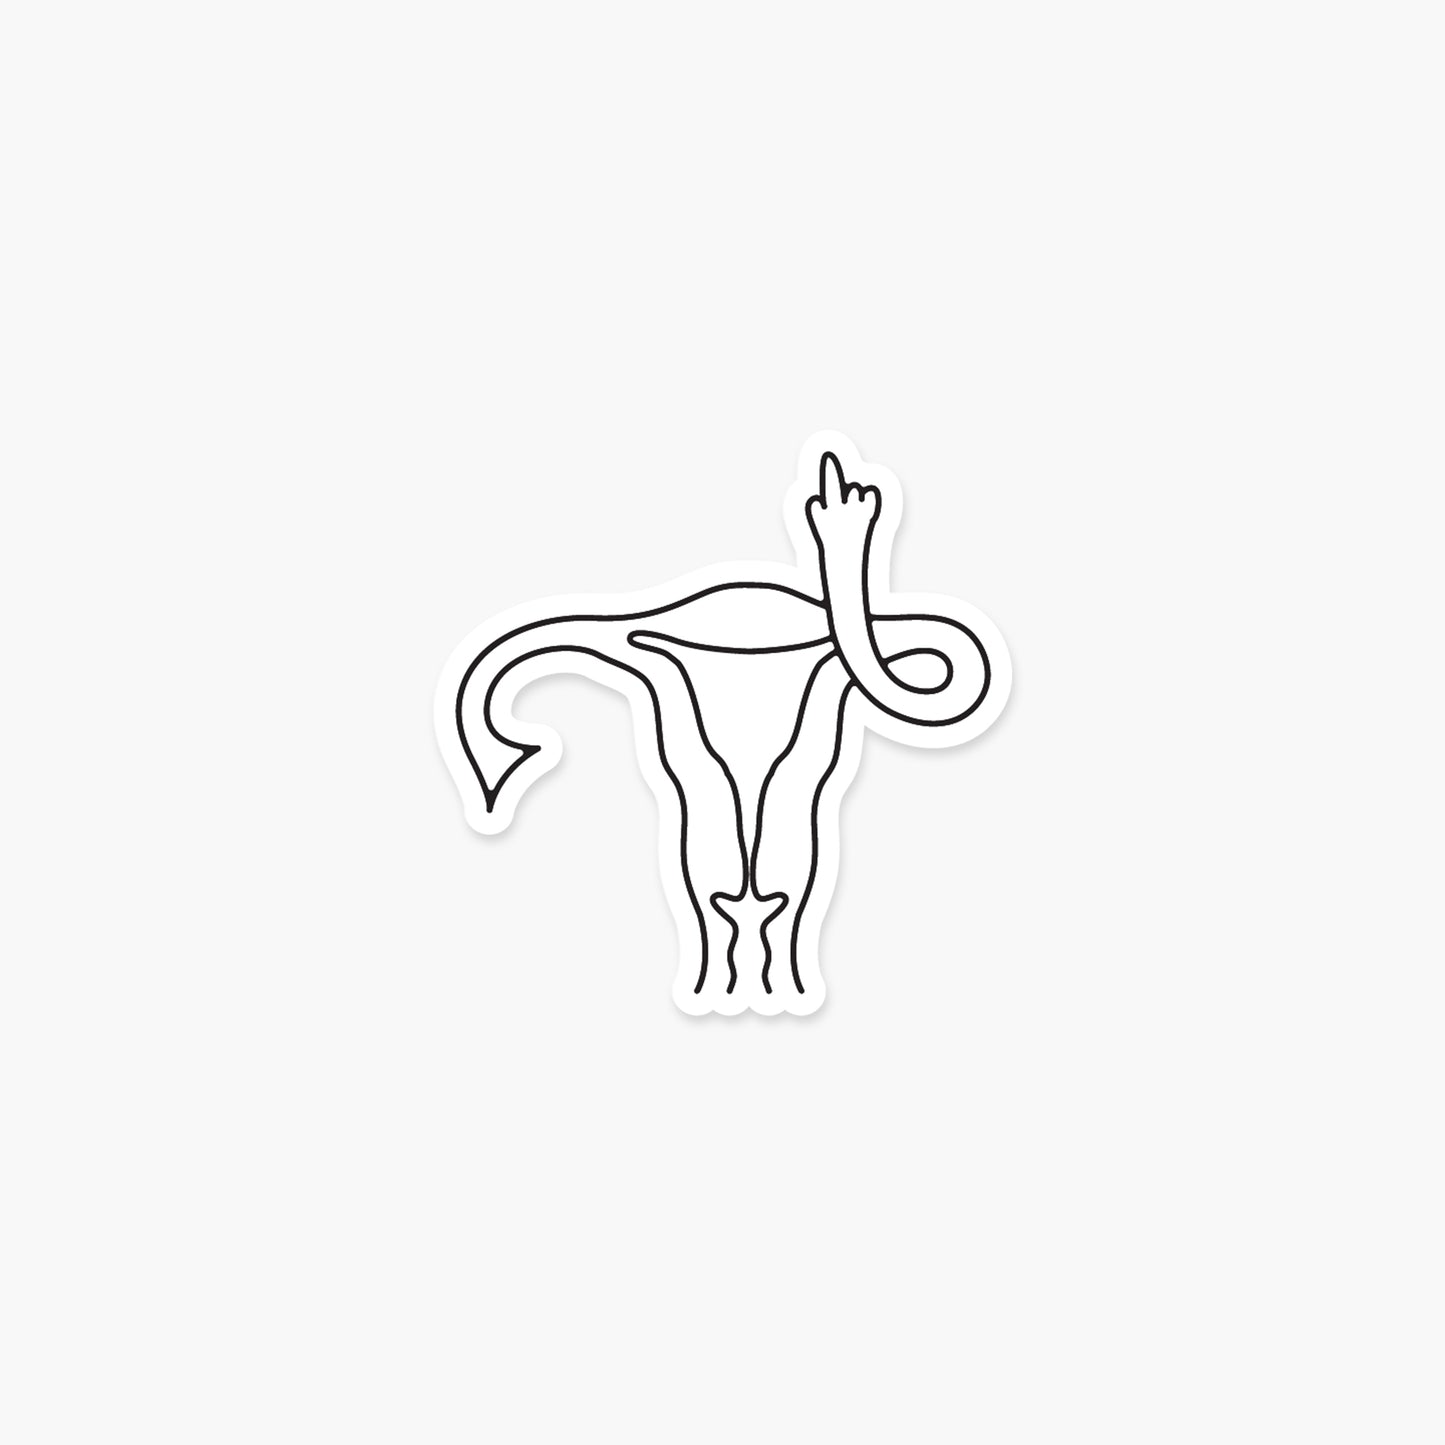 Middle Finger Uterus - Feminist Sticker | Footnotes Paper